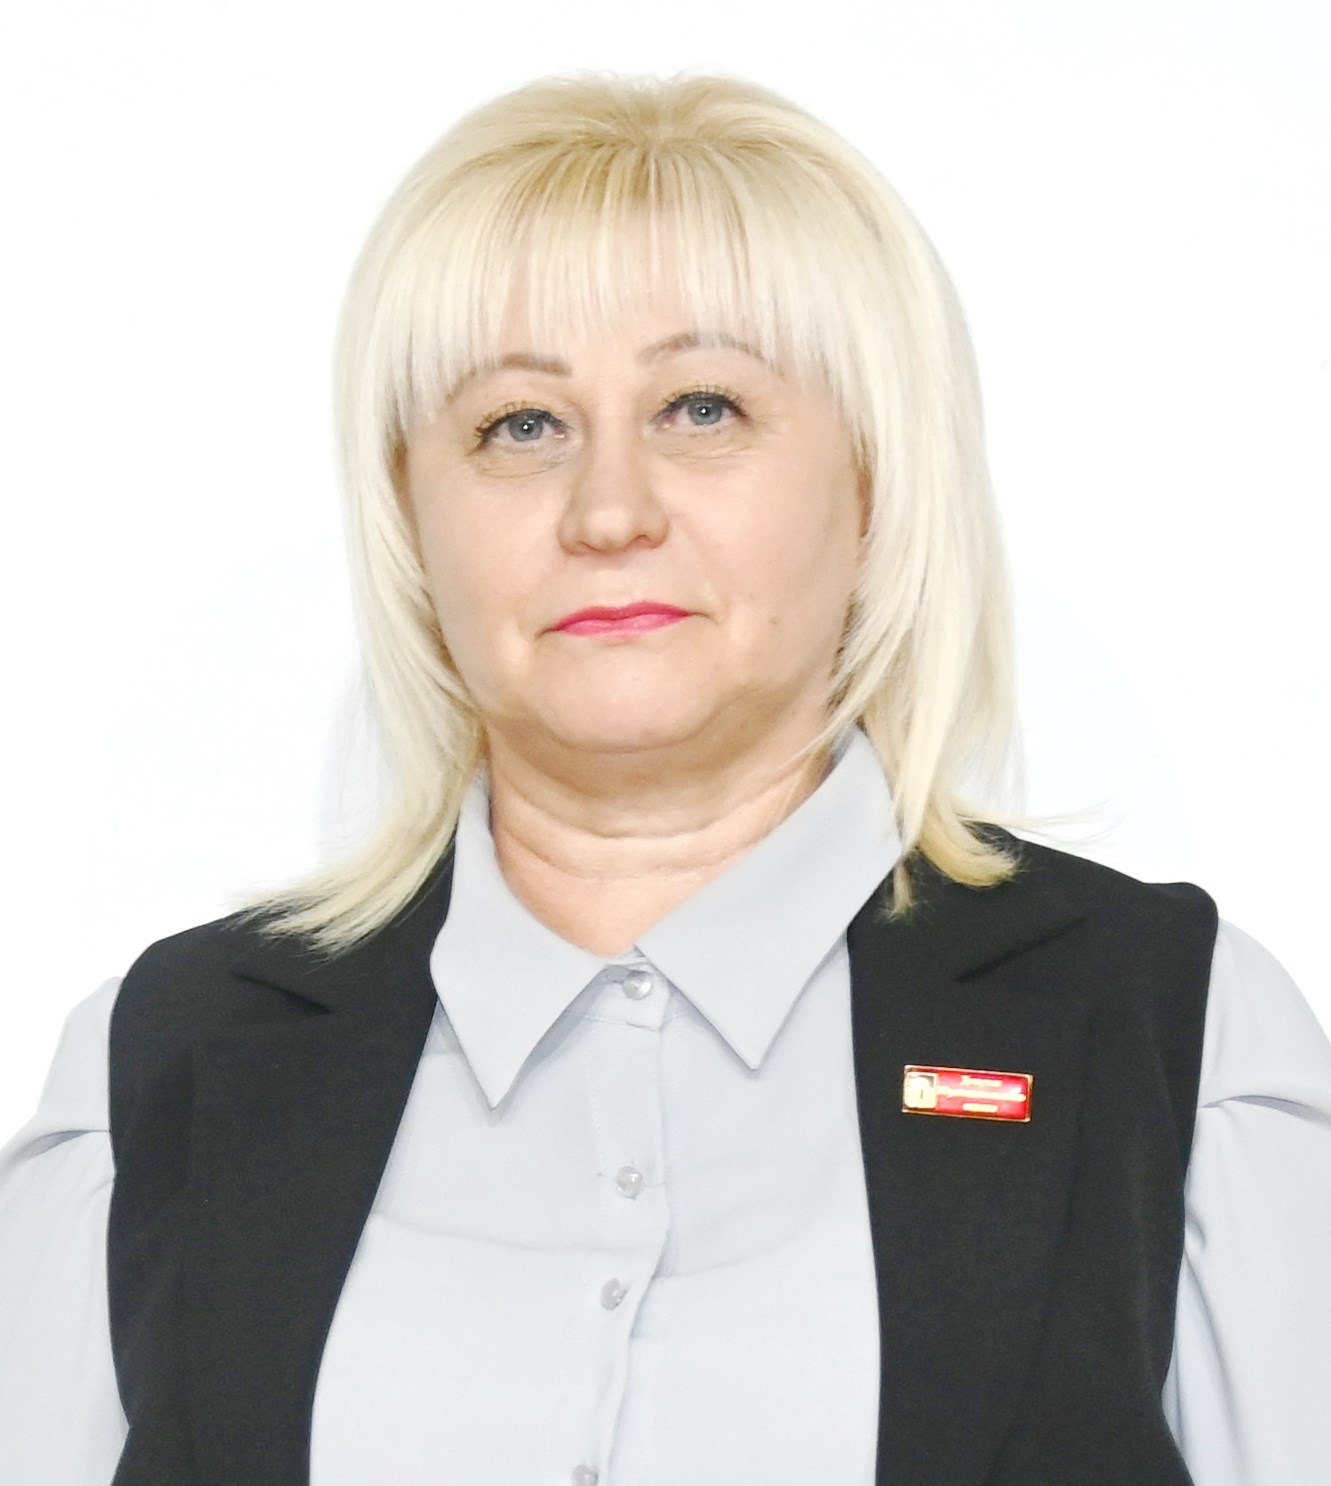 Пискарева Лариса Владимировна.